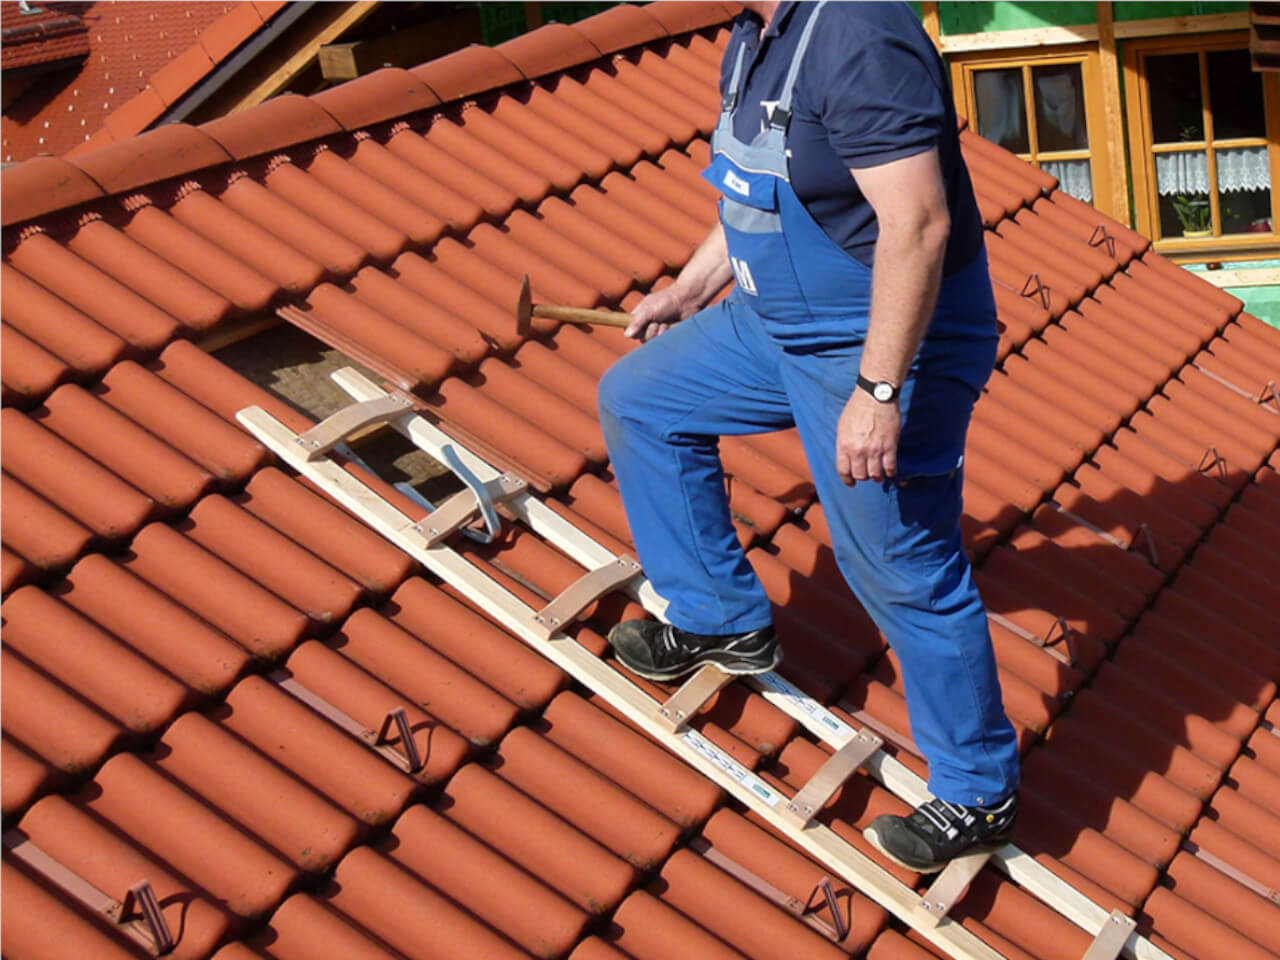 alu auflegeleiter liegt sicher auf dem dach durch dachhaken